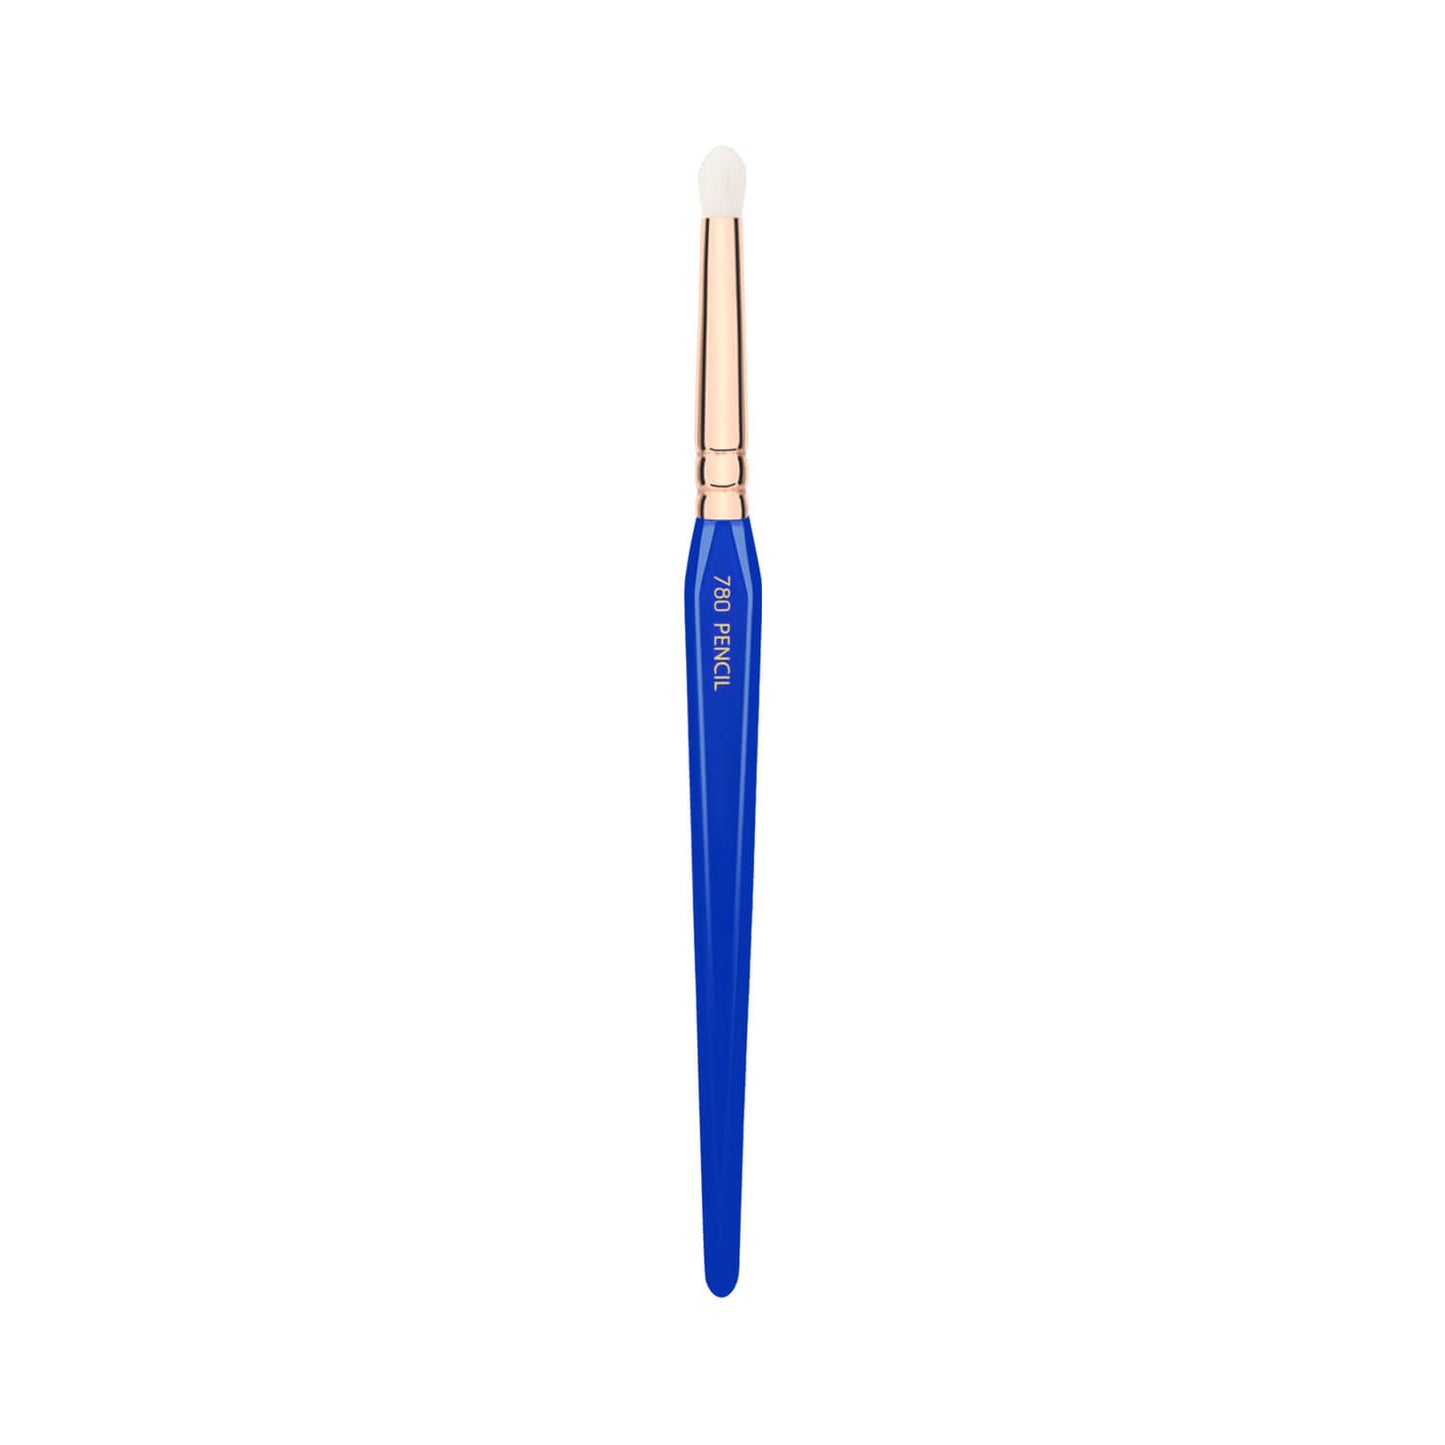 BDellium Tools Golden Triangle 780 Pencil Brush